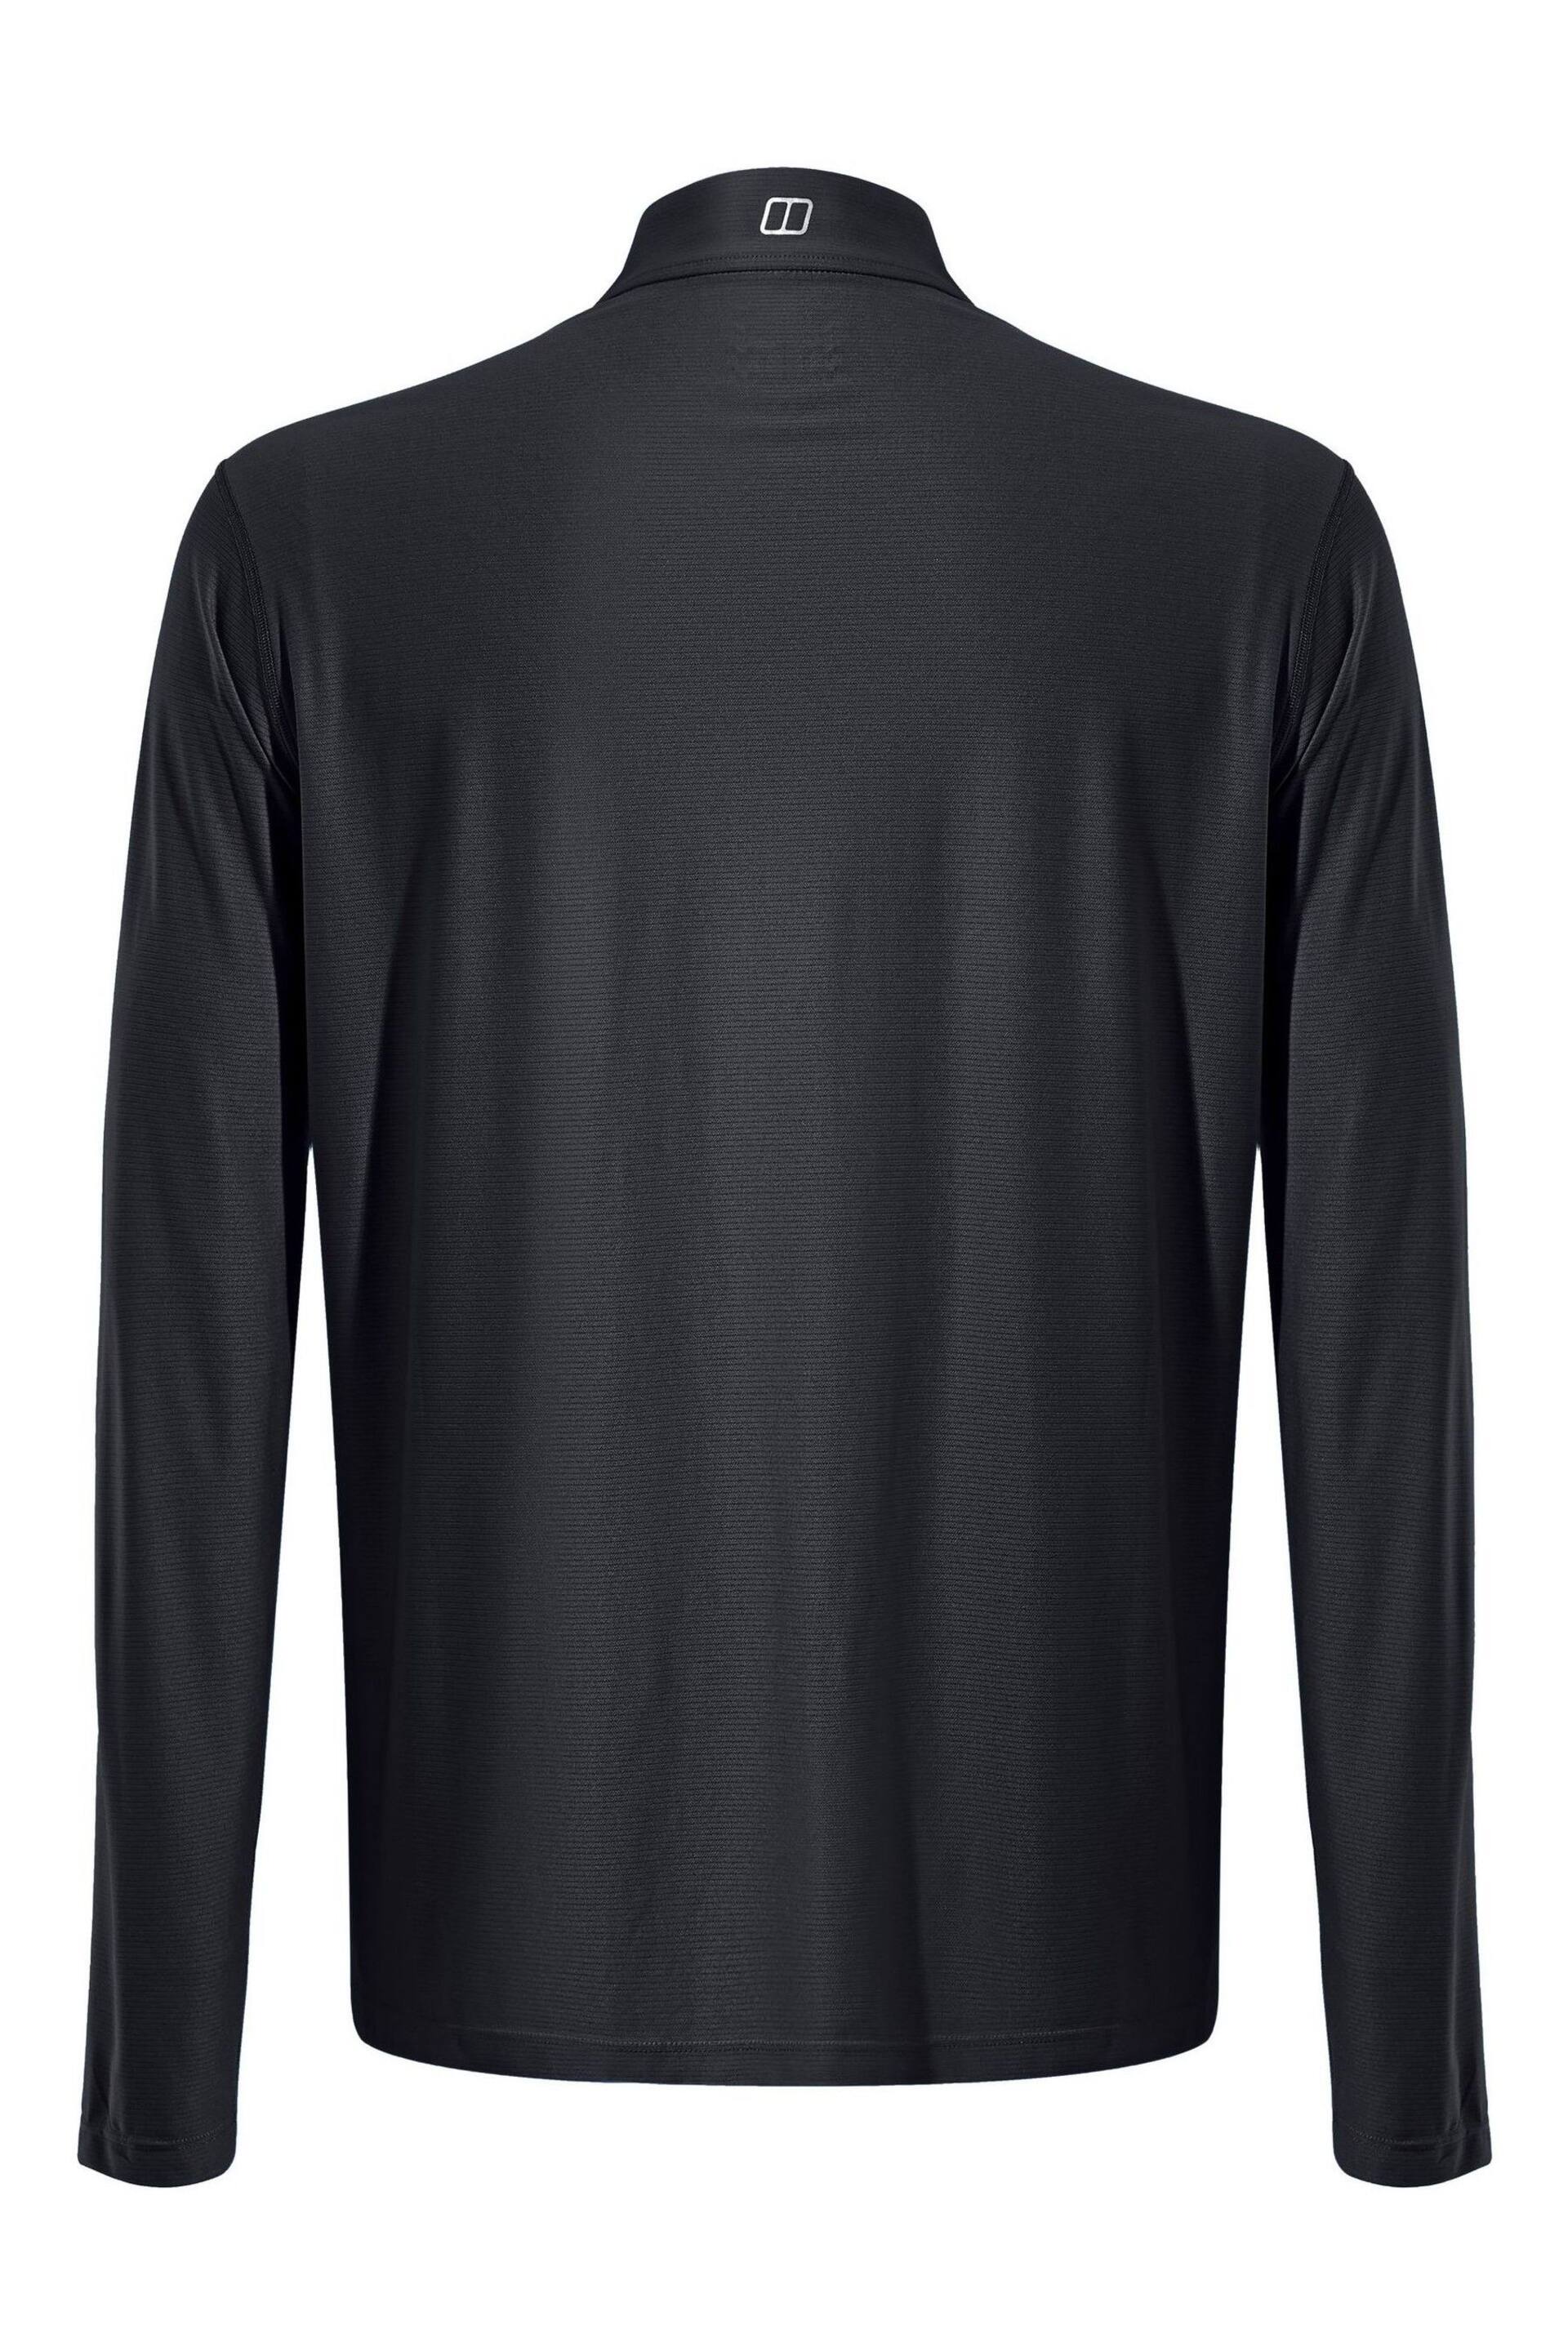 Berghaus 24/7 Base Zip Black Sweatshirt - Image 6 of 8